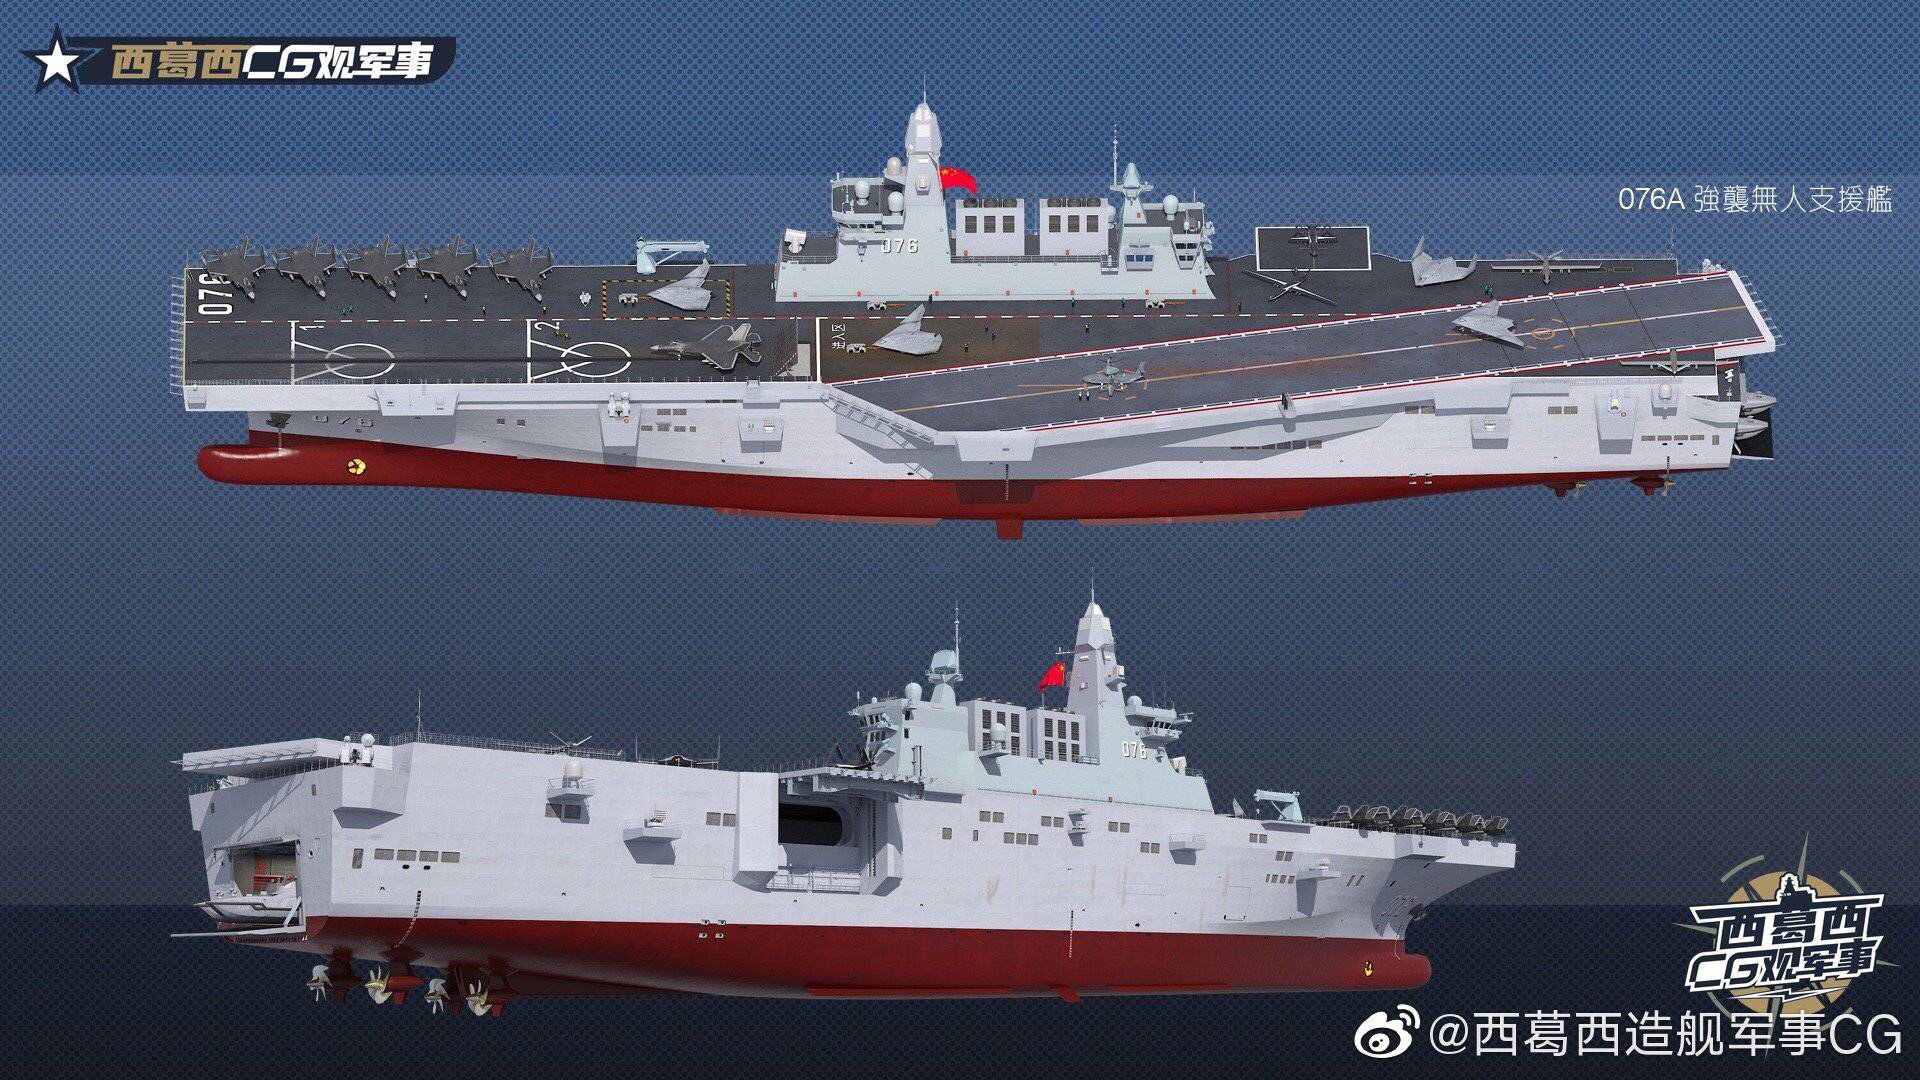 076型两栖攻击舰外形预测